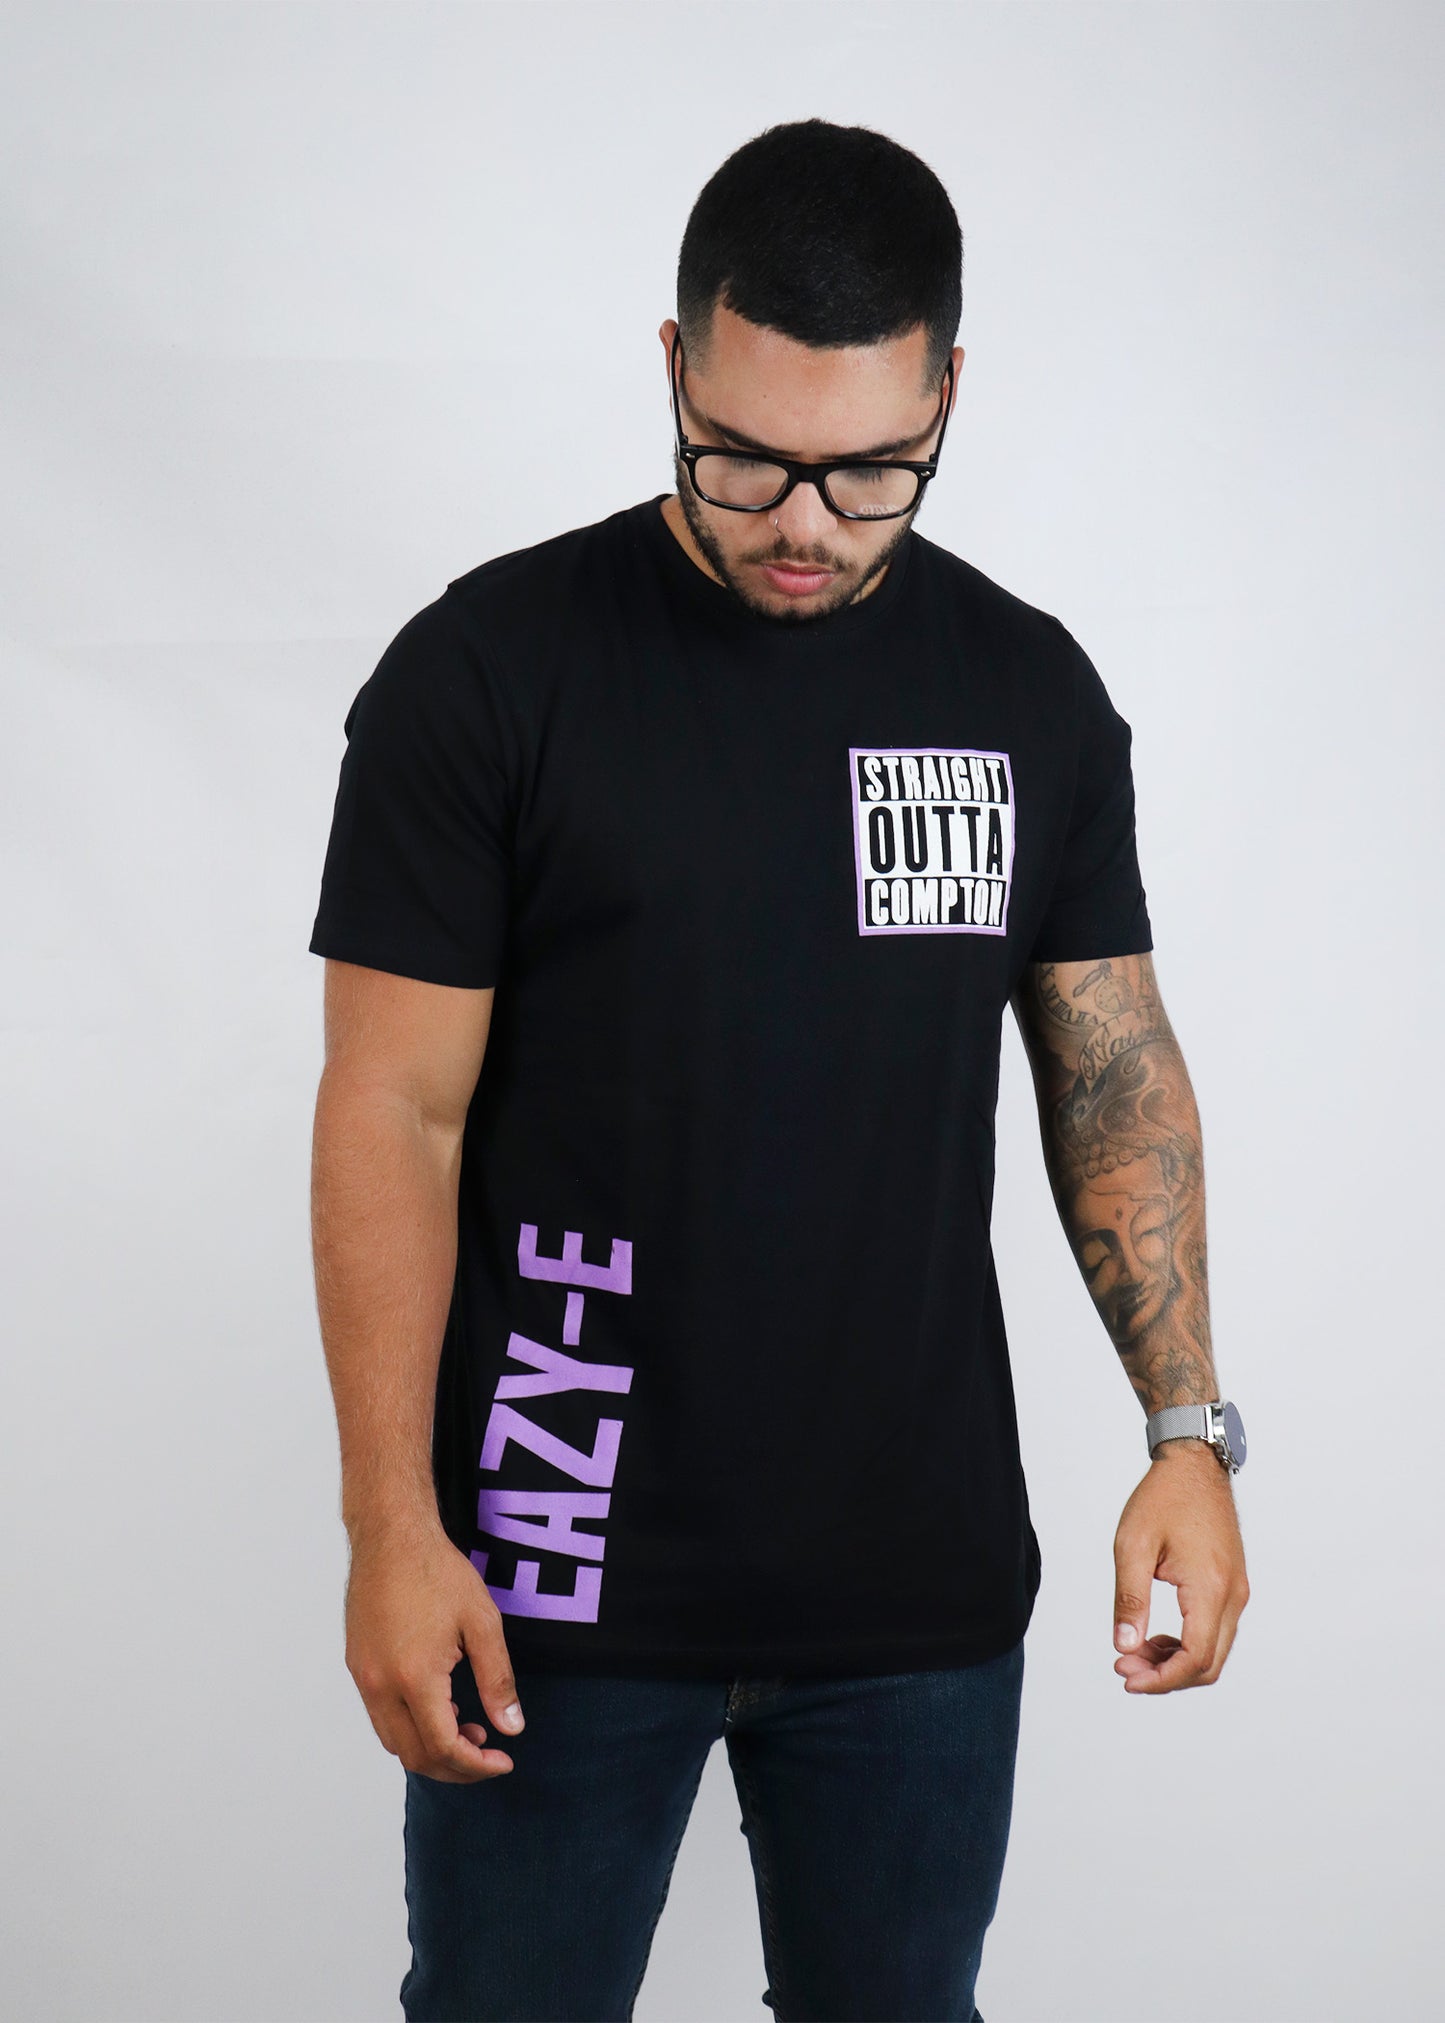 Camiseta Eazy- E Smookin Edition